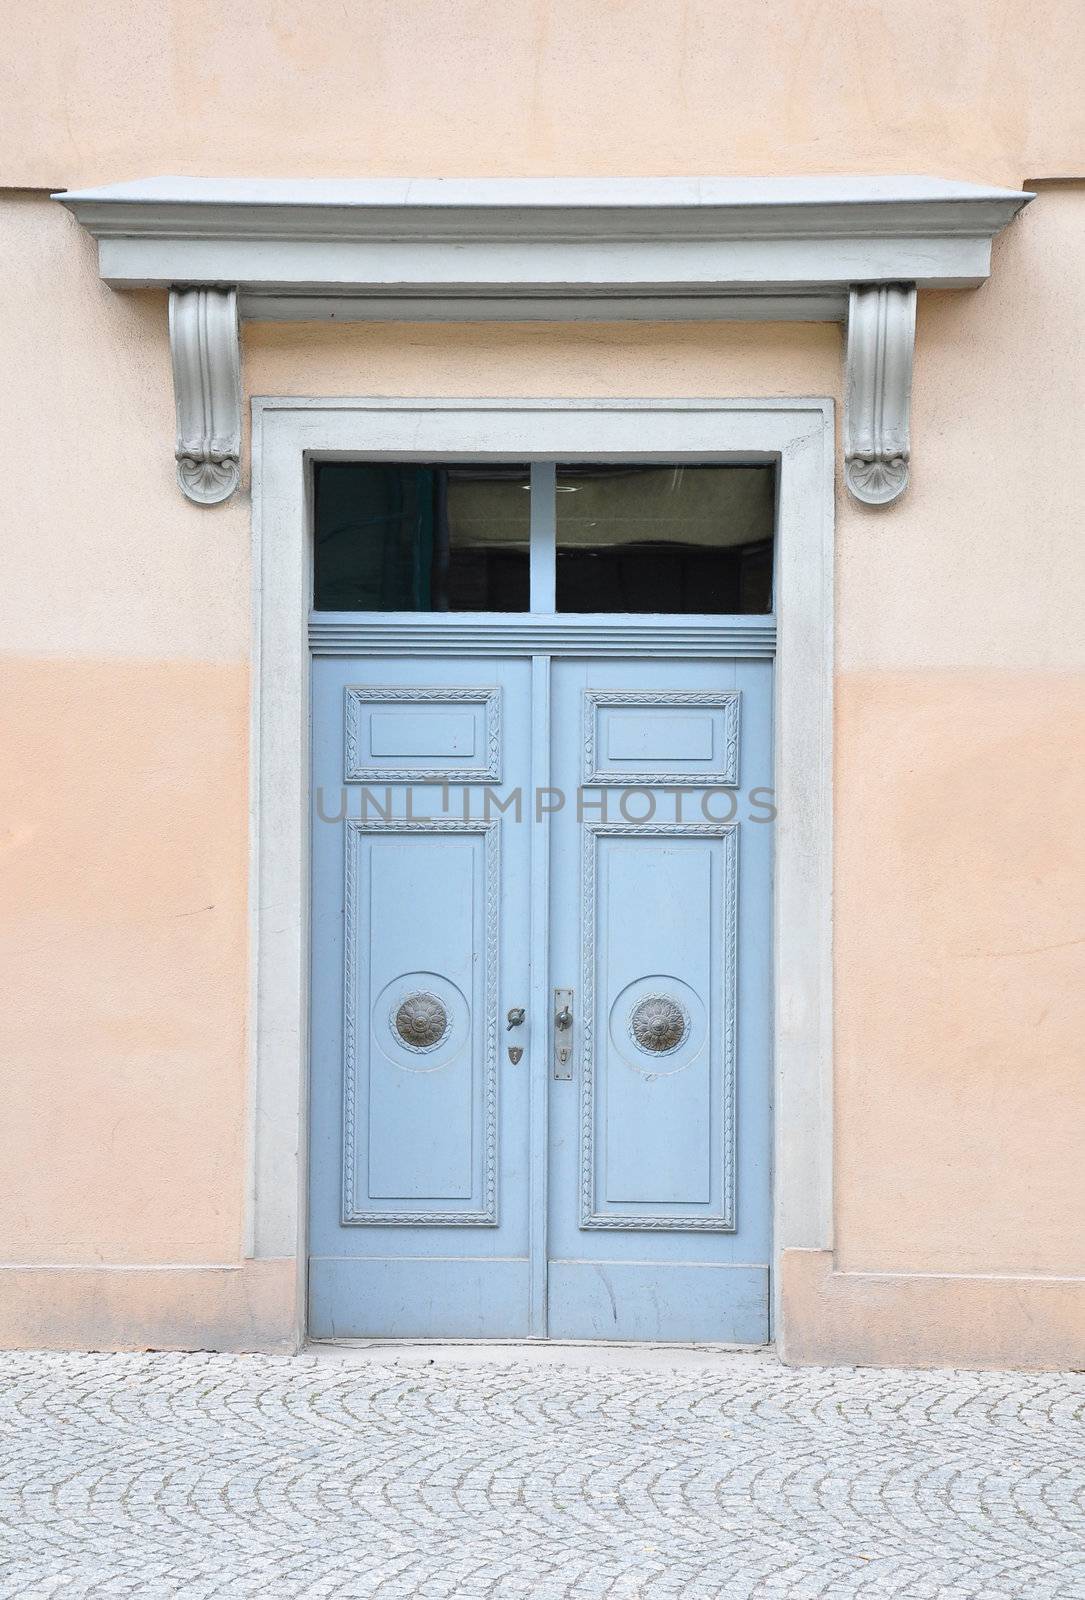 Portal in Weimar by rbiedermann